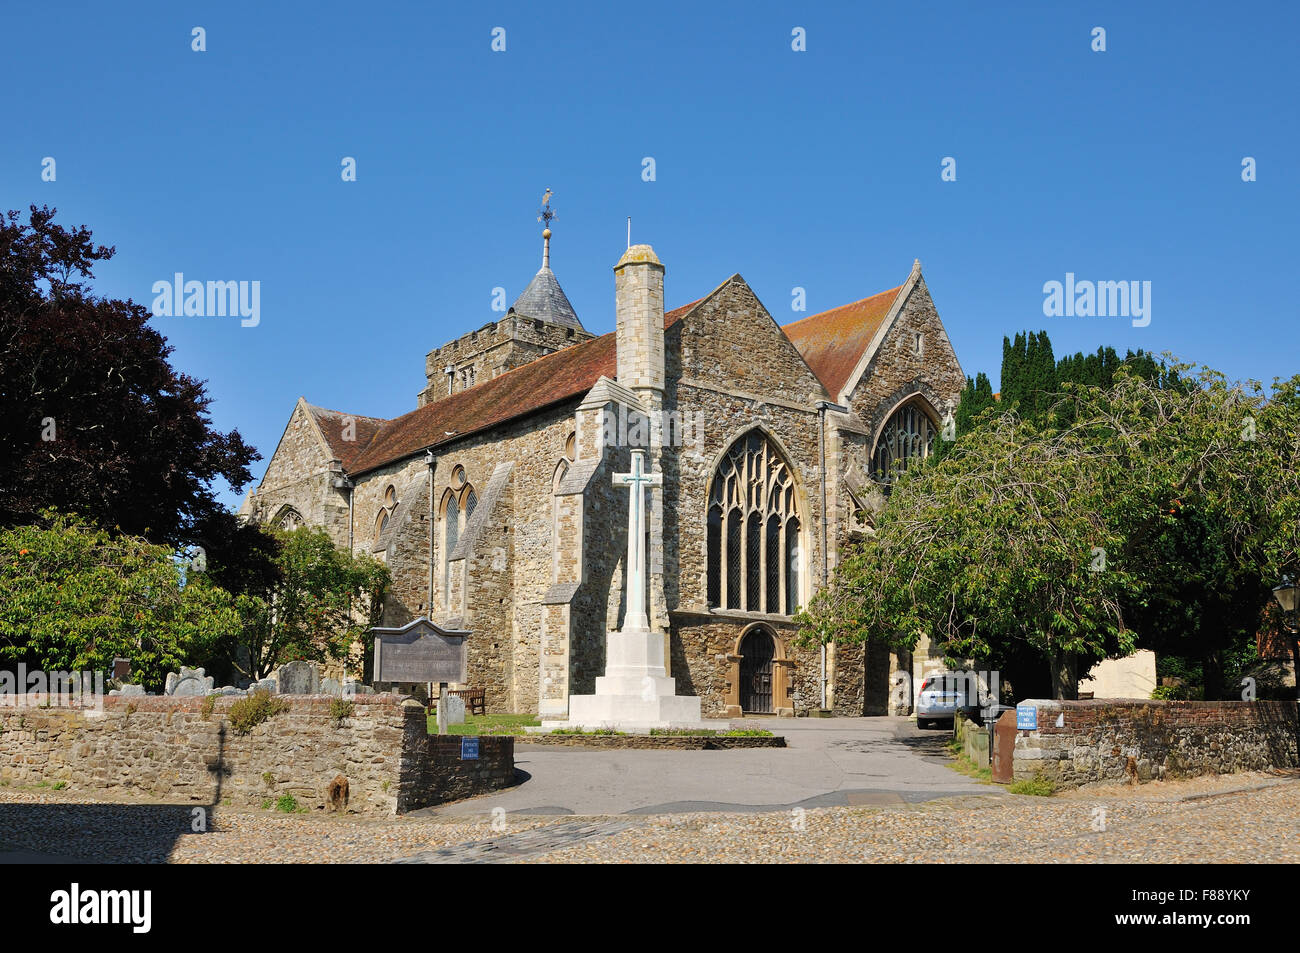 L'extérieur de l'église médiévale de St Mary, de la place de l'église, dans la ville historique de Rye, East Sussex, Royaume-Uni Banque D'Images